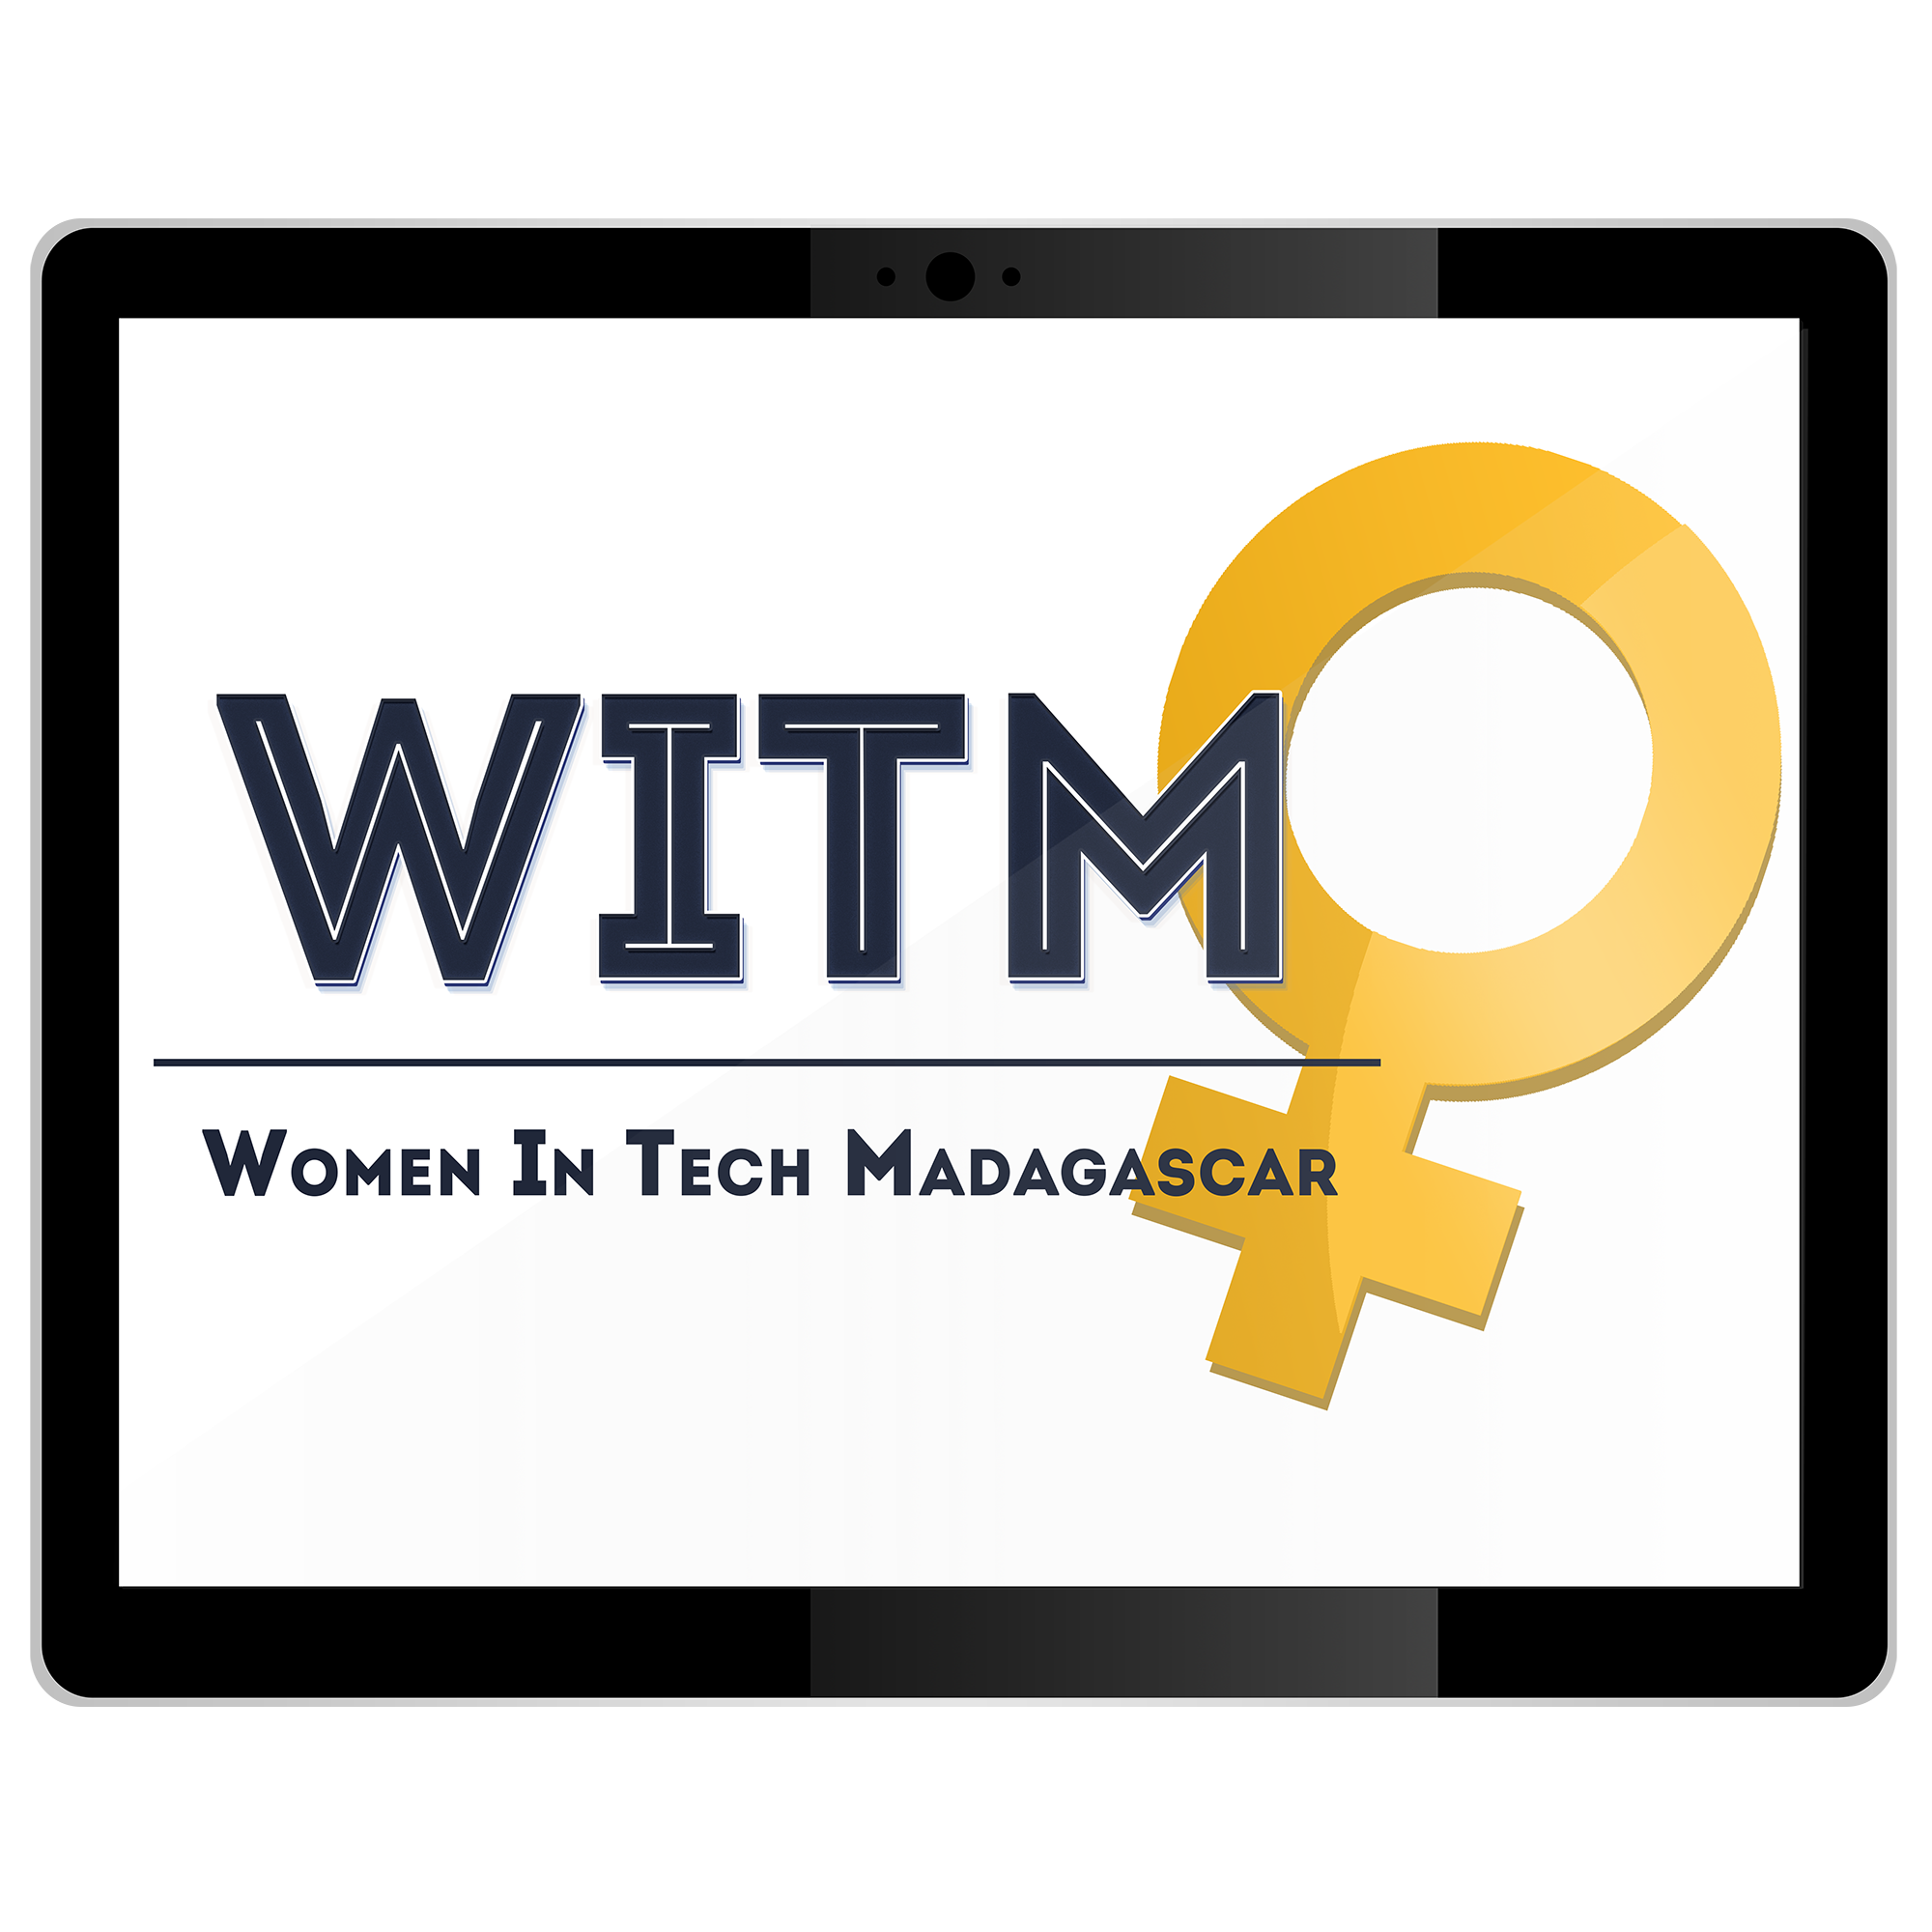 Formation gratuite en développement jeux vidéo by Women In Tech Madagascar